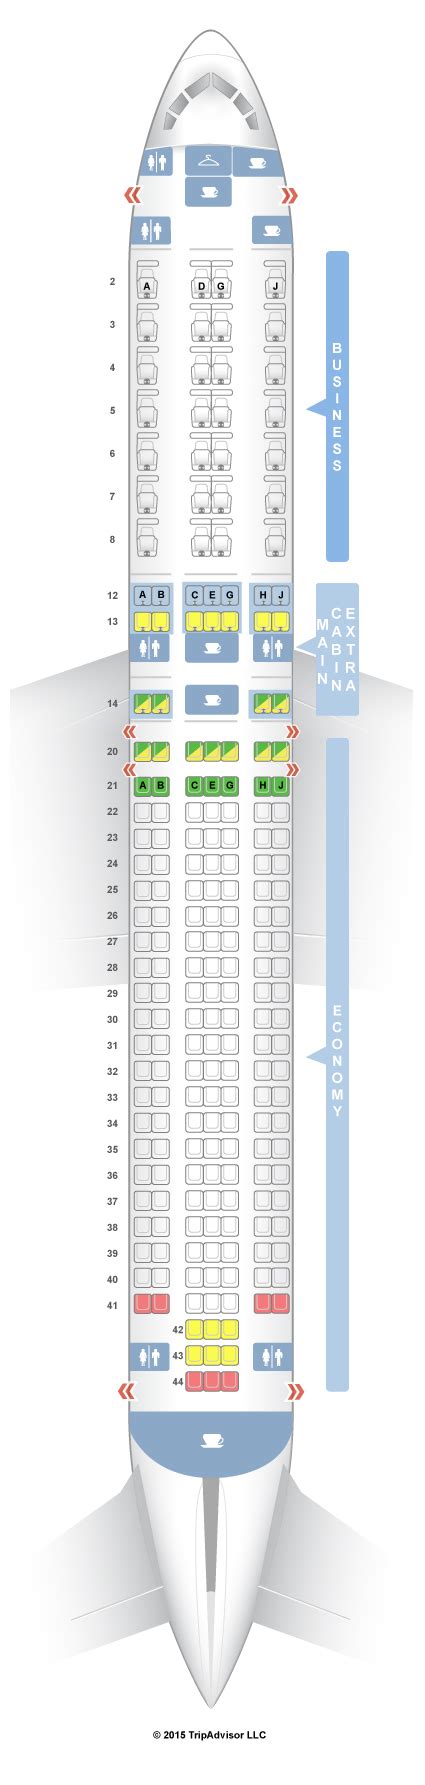 Seatguru Seat Map American Airlines Boeing 767 300 763 V2 In 2020